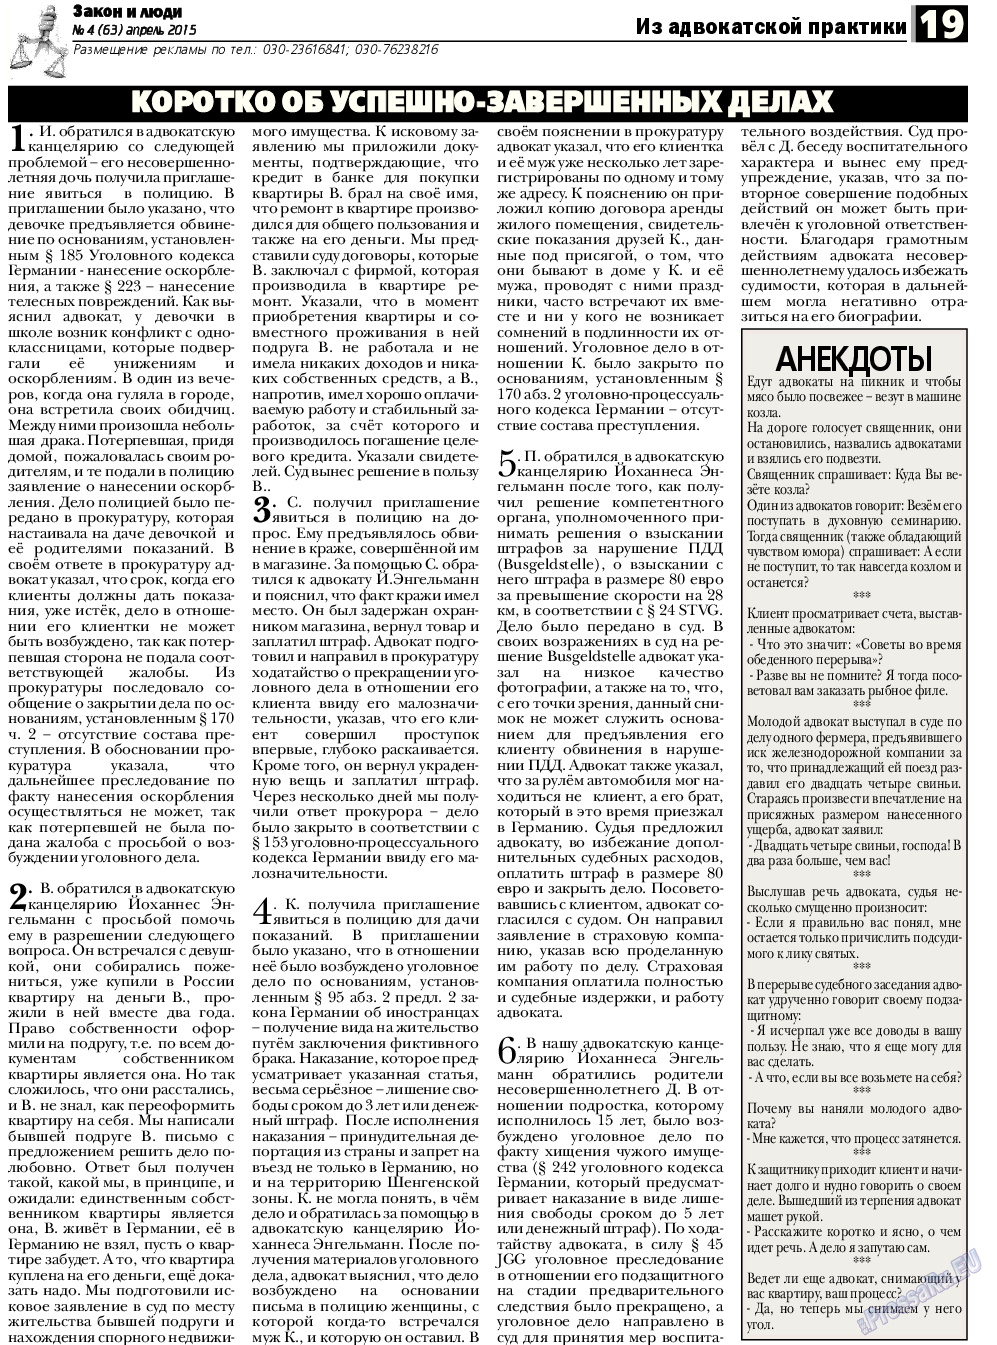 Закон и люди (газета). 2015 год, номер 4, стр. 19